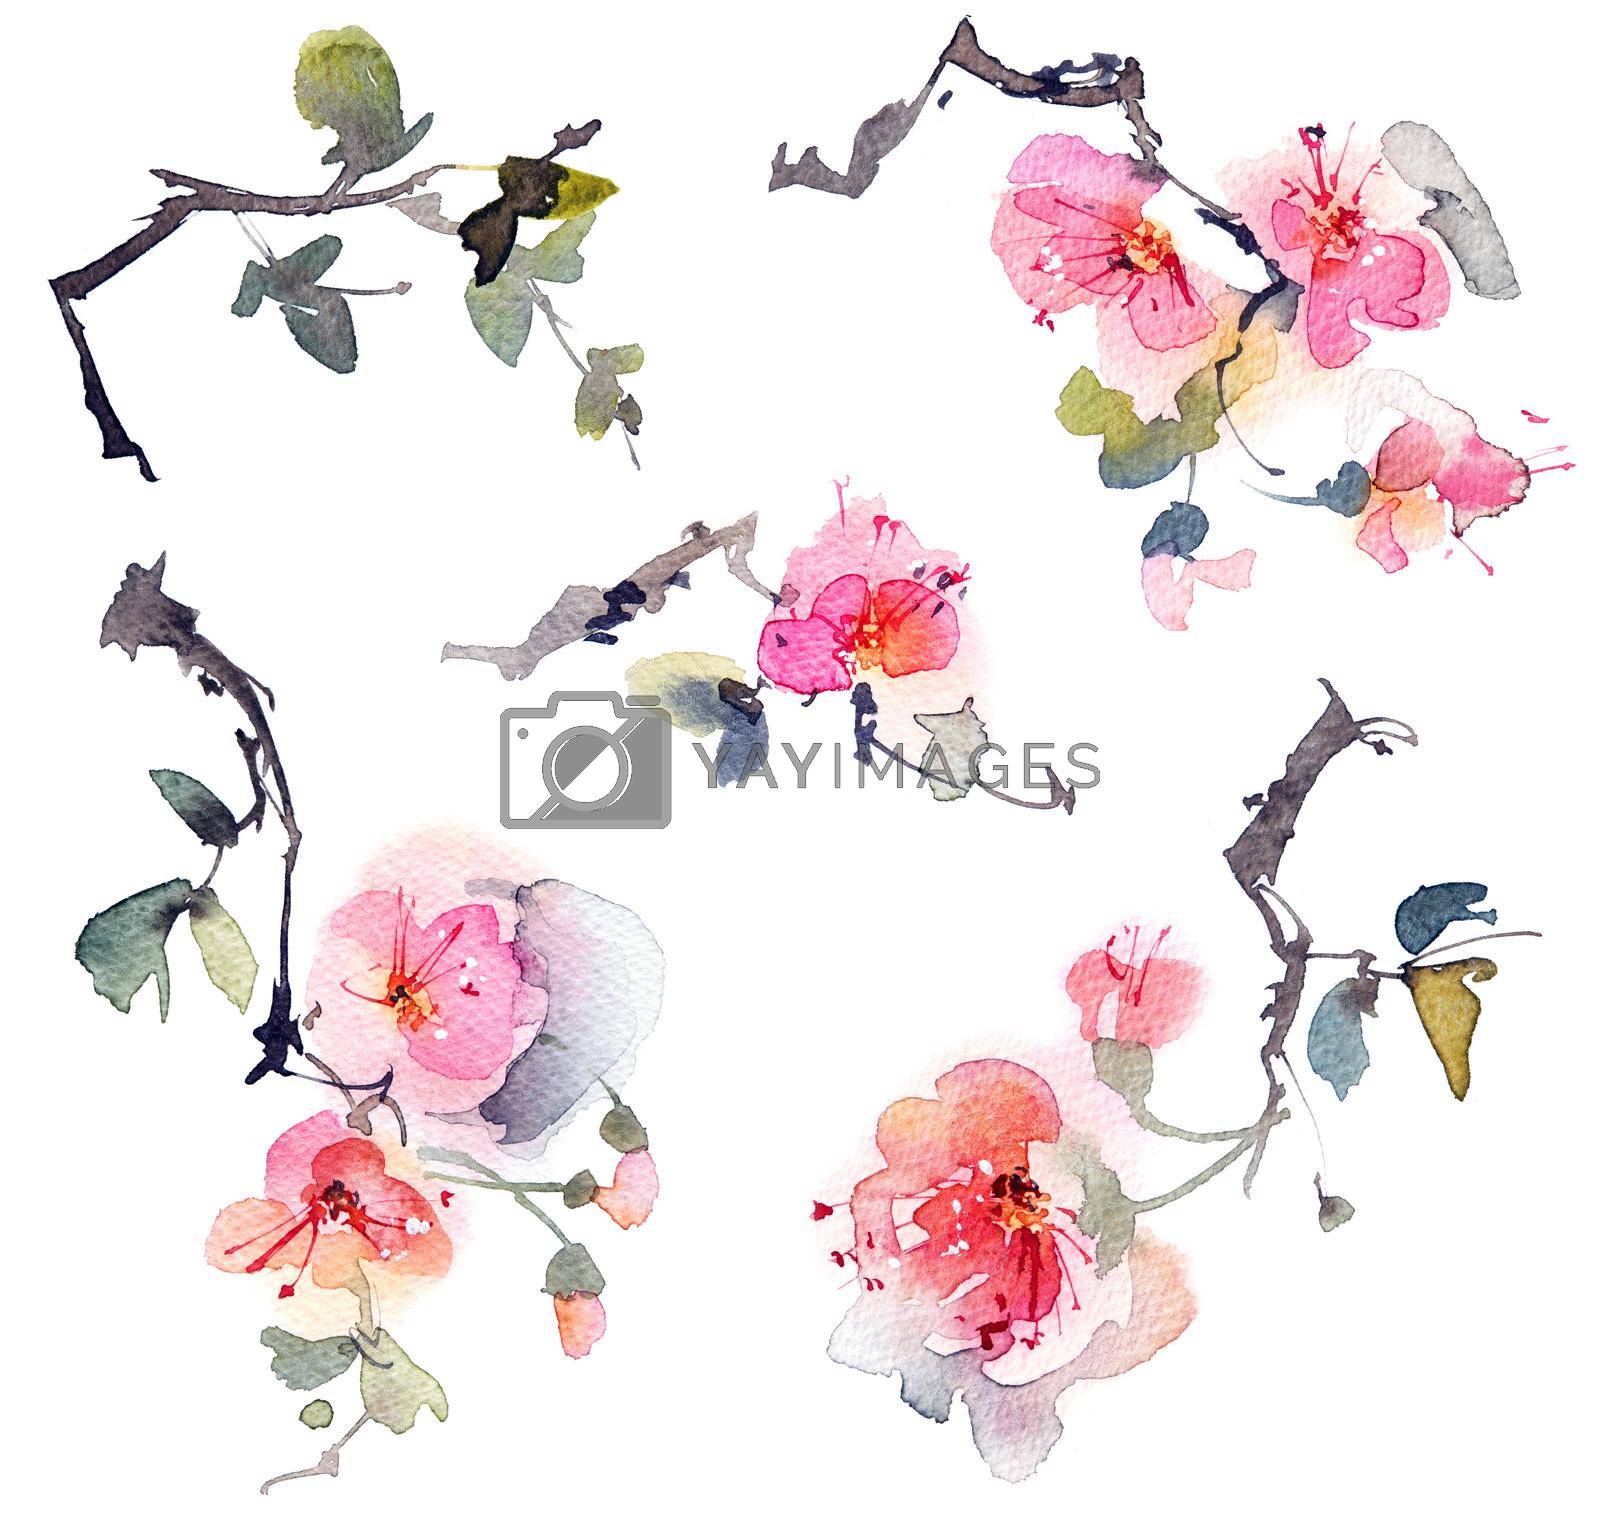 Royalty free image of Blossom tree branch by Olatarakanova